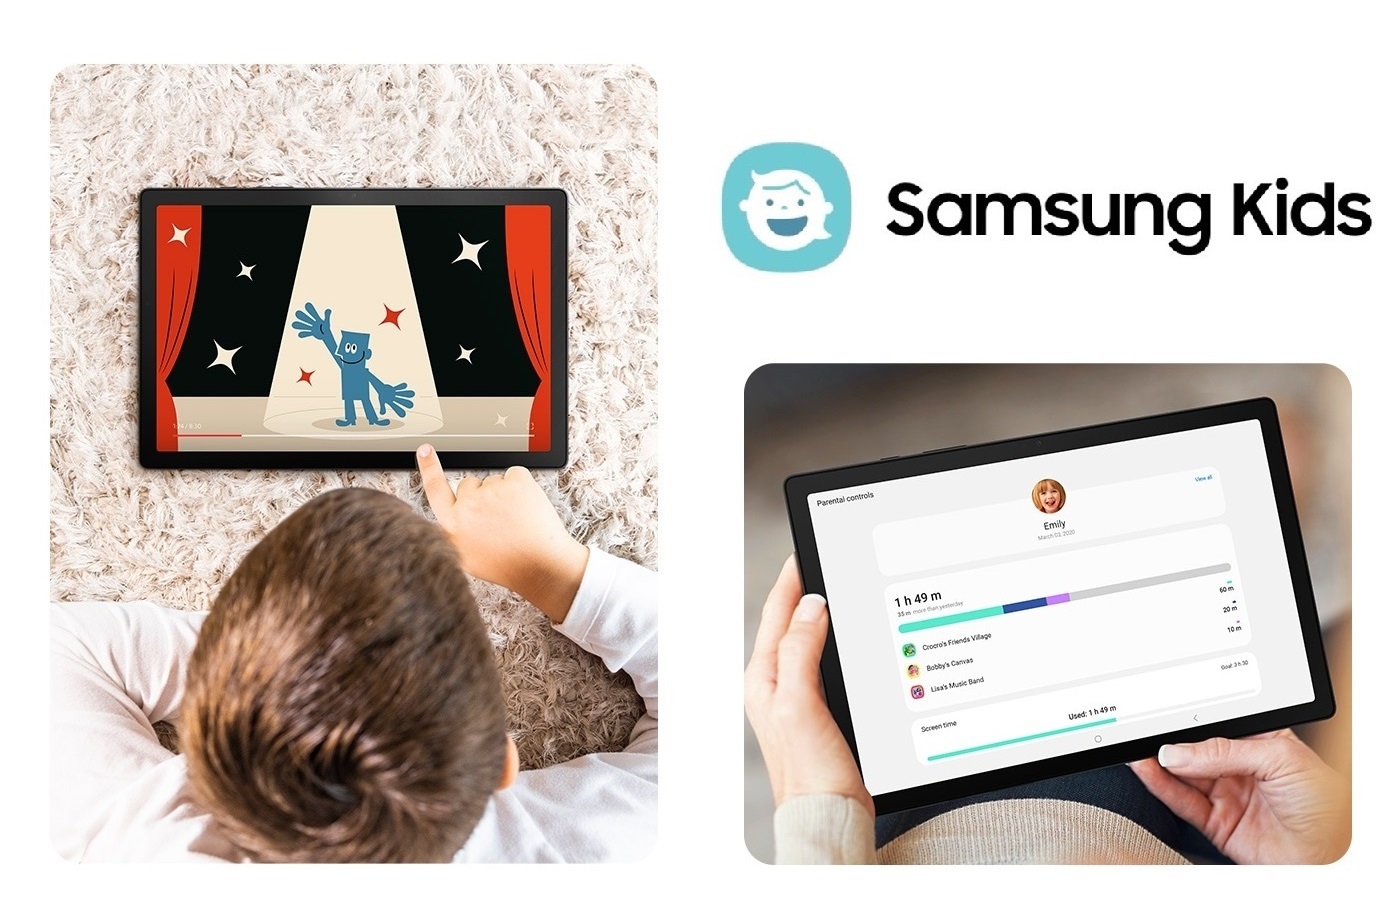 Samsung Galaxy Tab A8 obsahuje aplikaci Samsung Kids, která je určená pro zábavný rozvoj a vzdělávání dětí v naprosto bezpečném prostředí